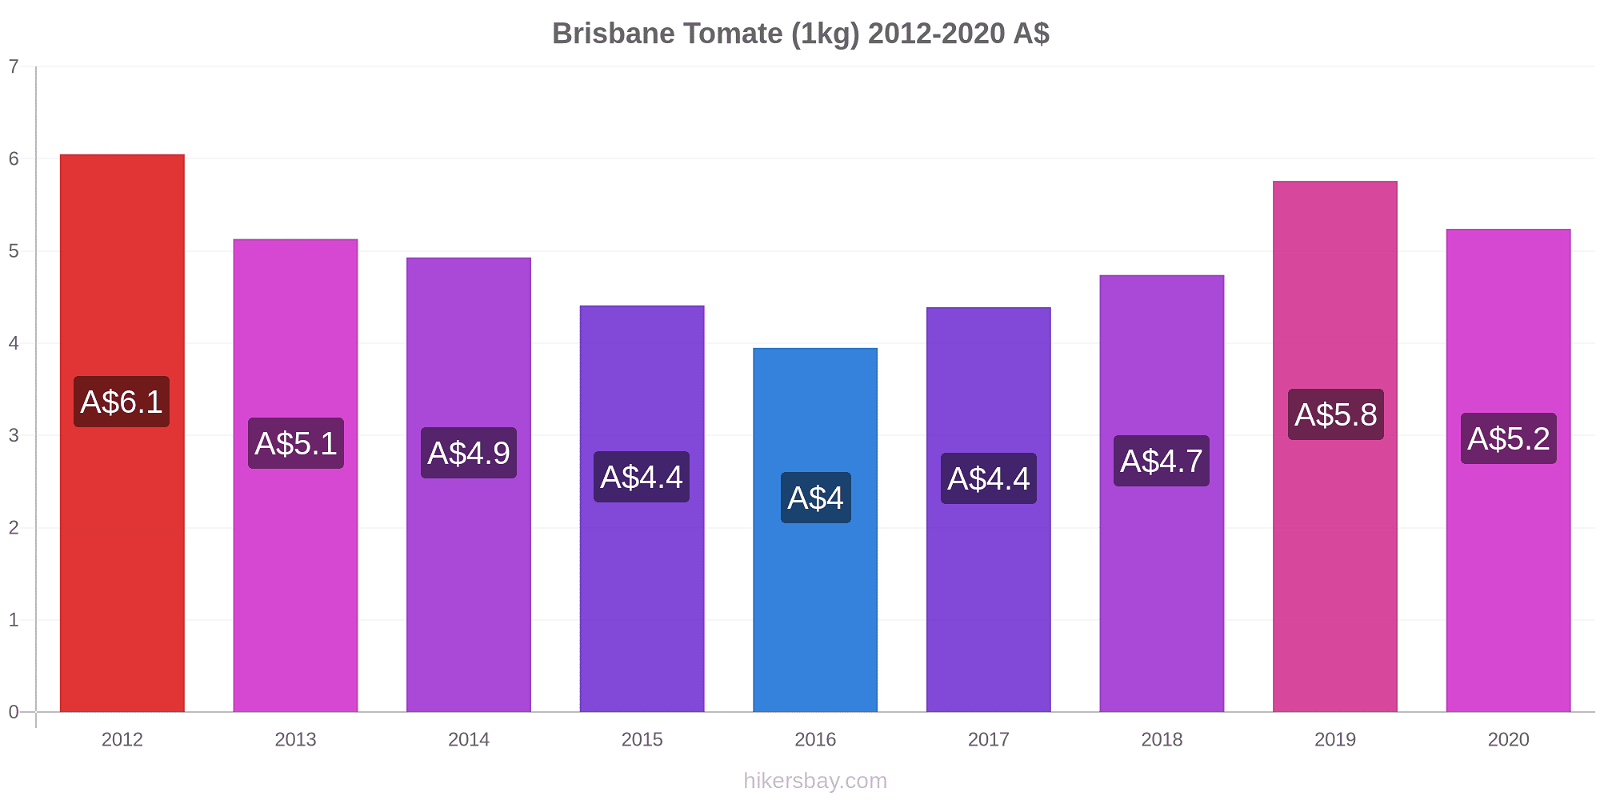 Brisbane cambios de precios Tomate (1kg) hikersbay.com